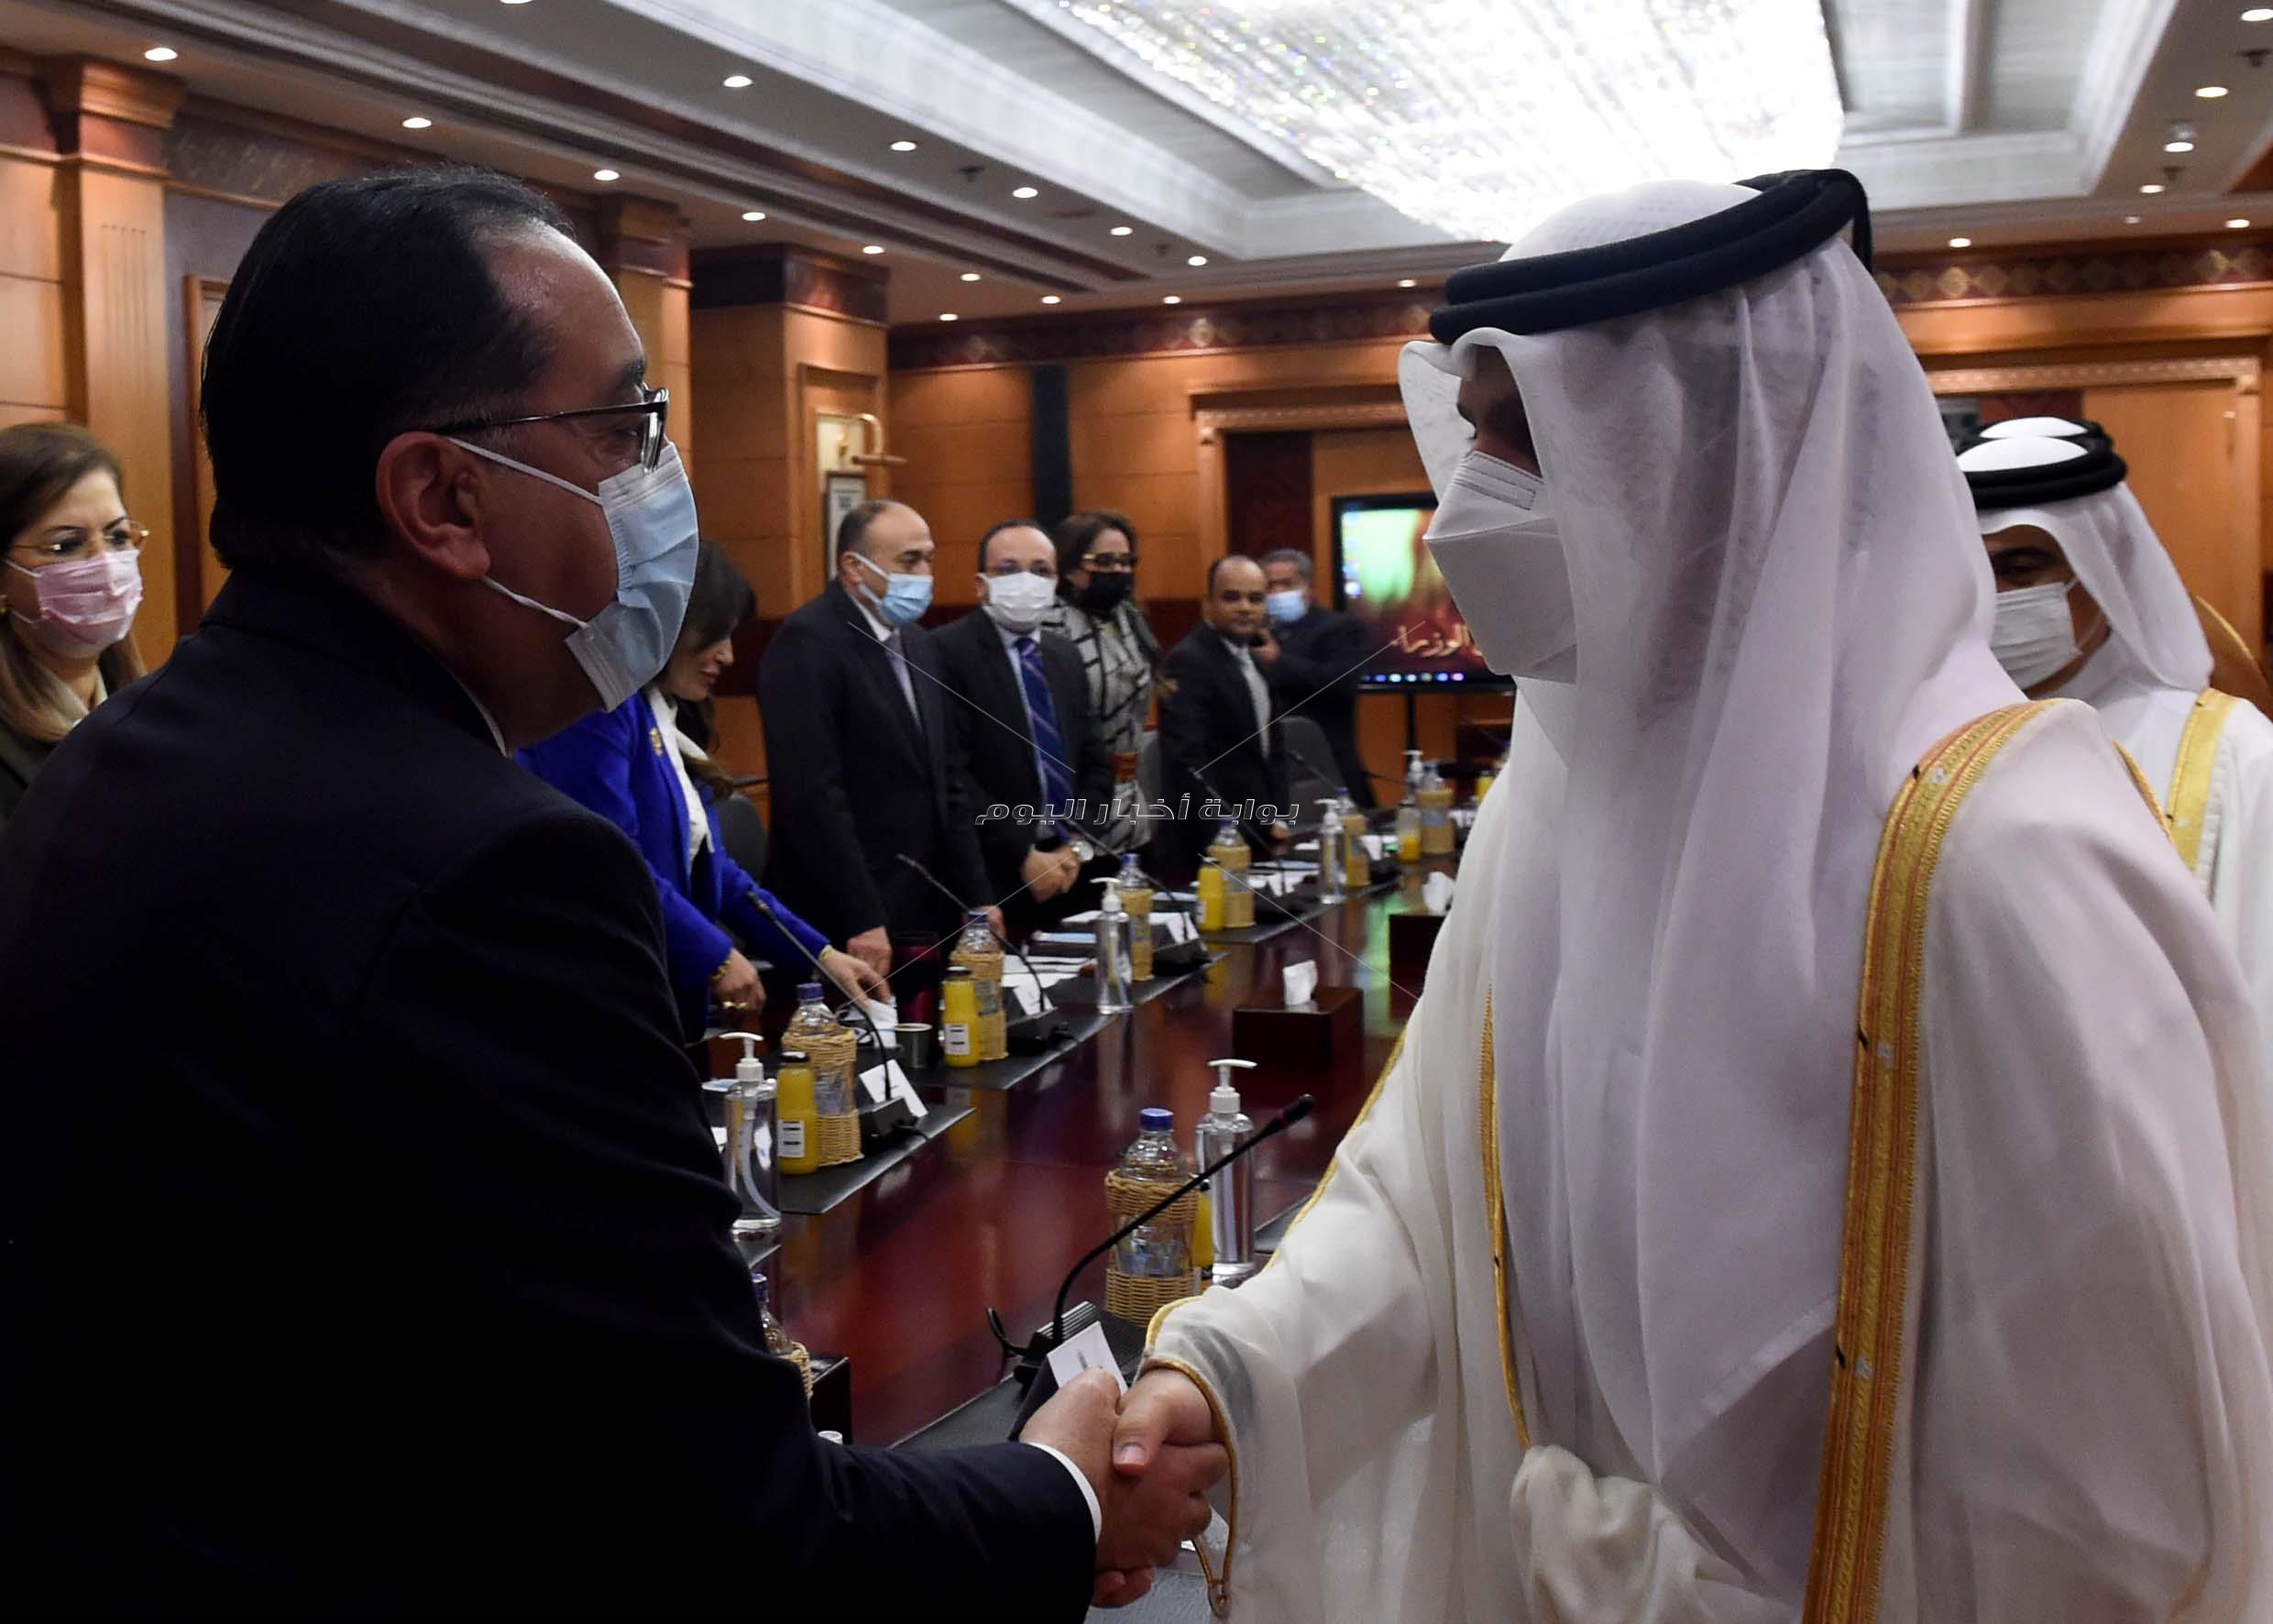 رئيس الوزراء يلتقى وزيرى الخارجية والمالية بدولة قطر